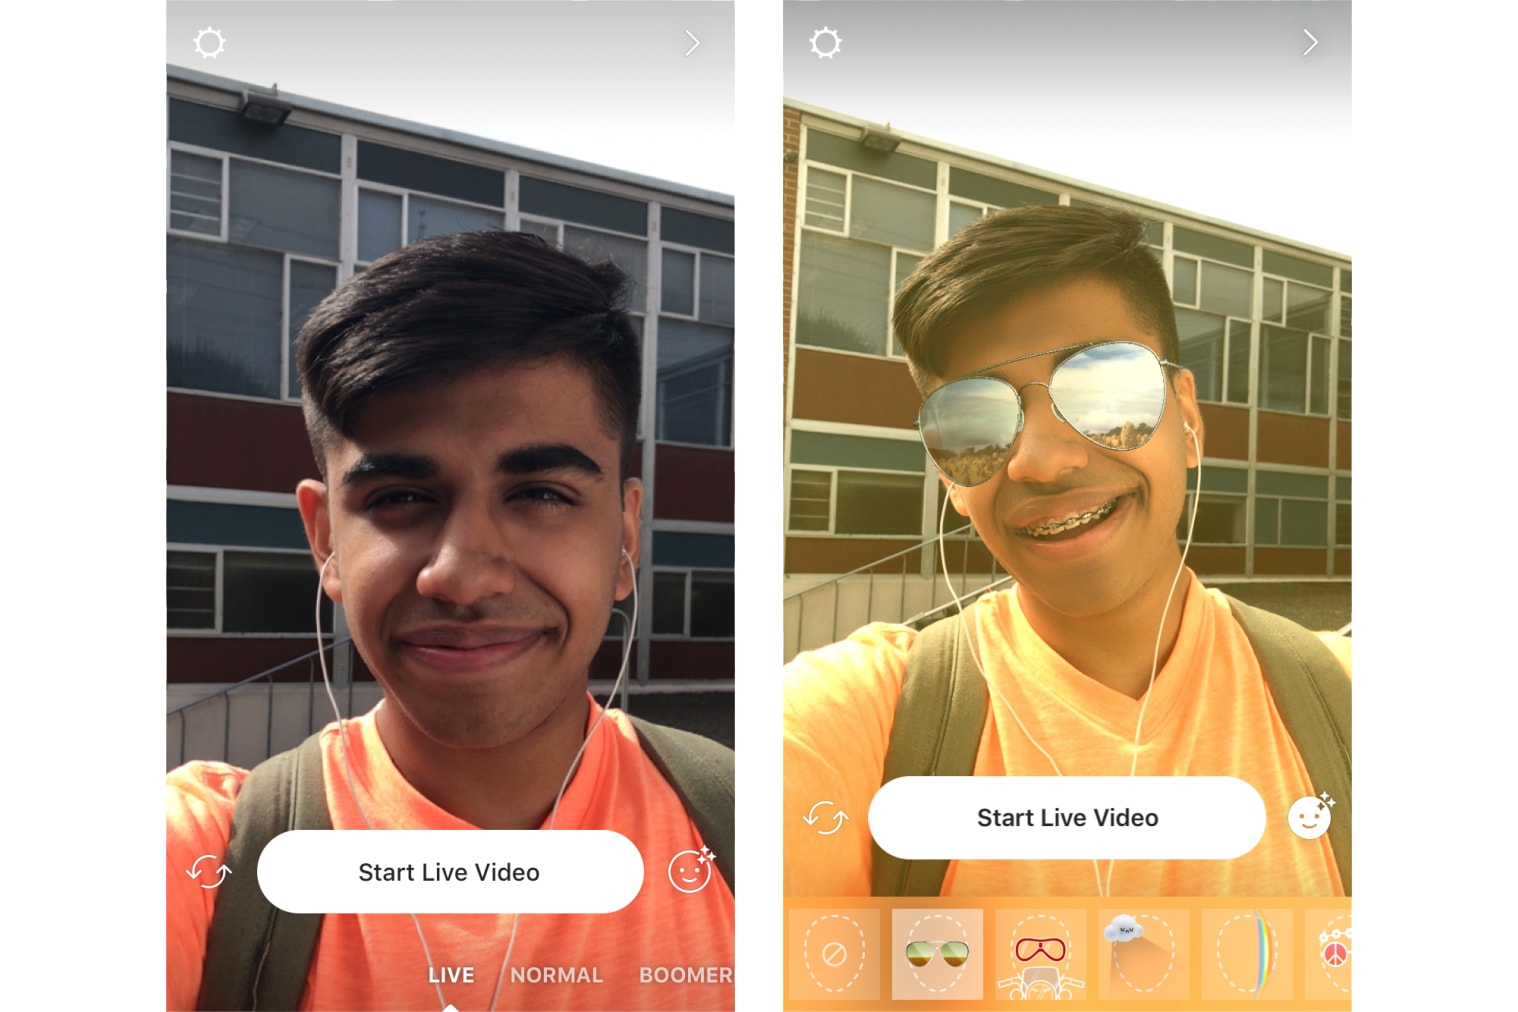 Instagram Face Filters Live Videos 2017 September 21 Release App Update